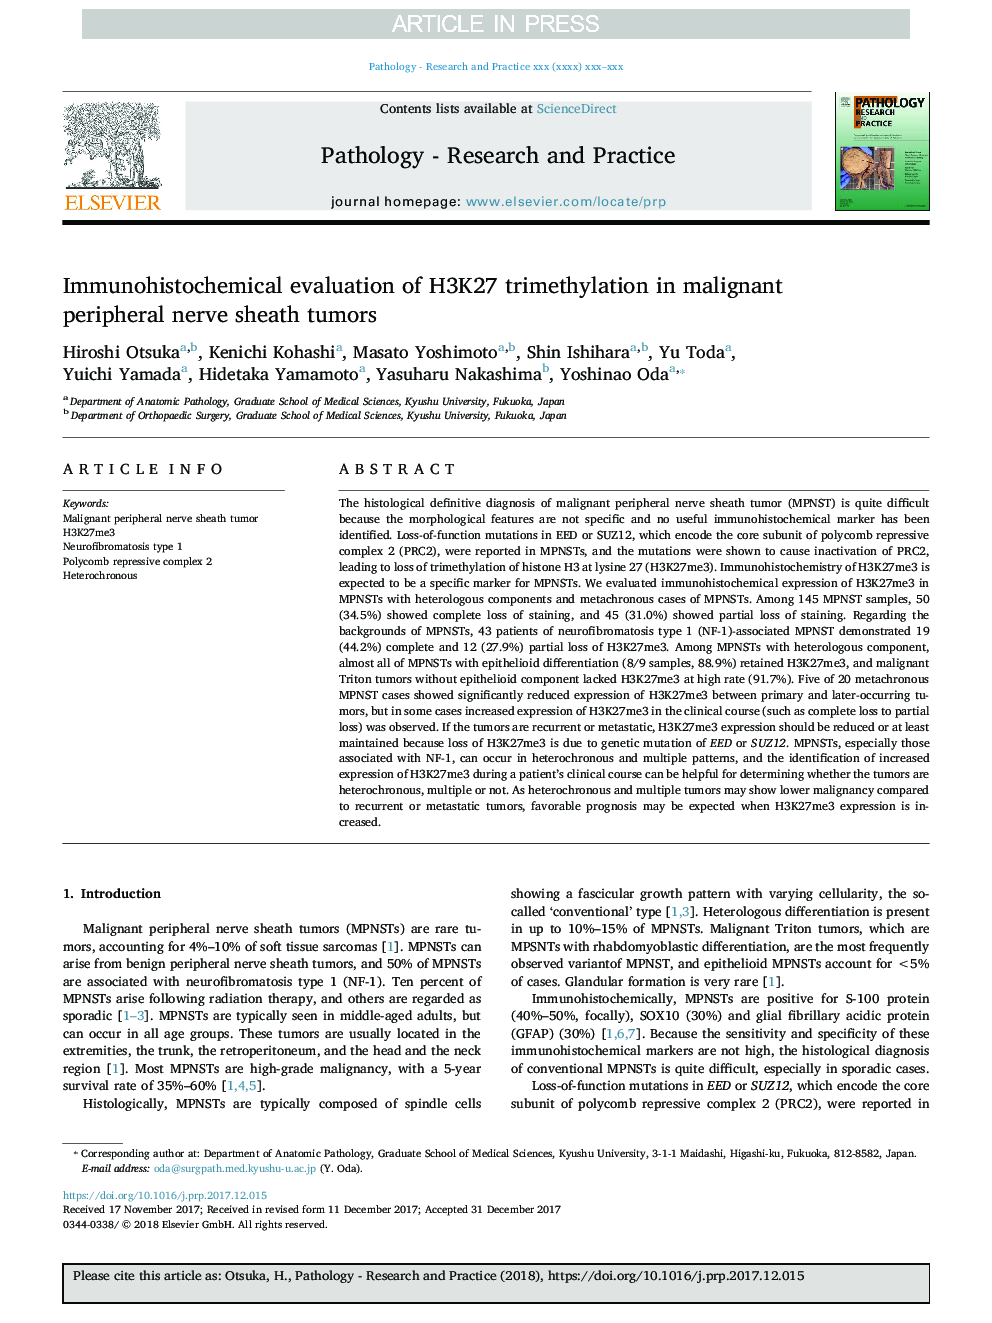 Immunohistochemical evaluation of H3K27 trimethylation in malignant peripheral nerve sheath tumors